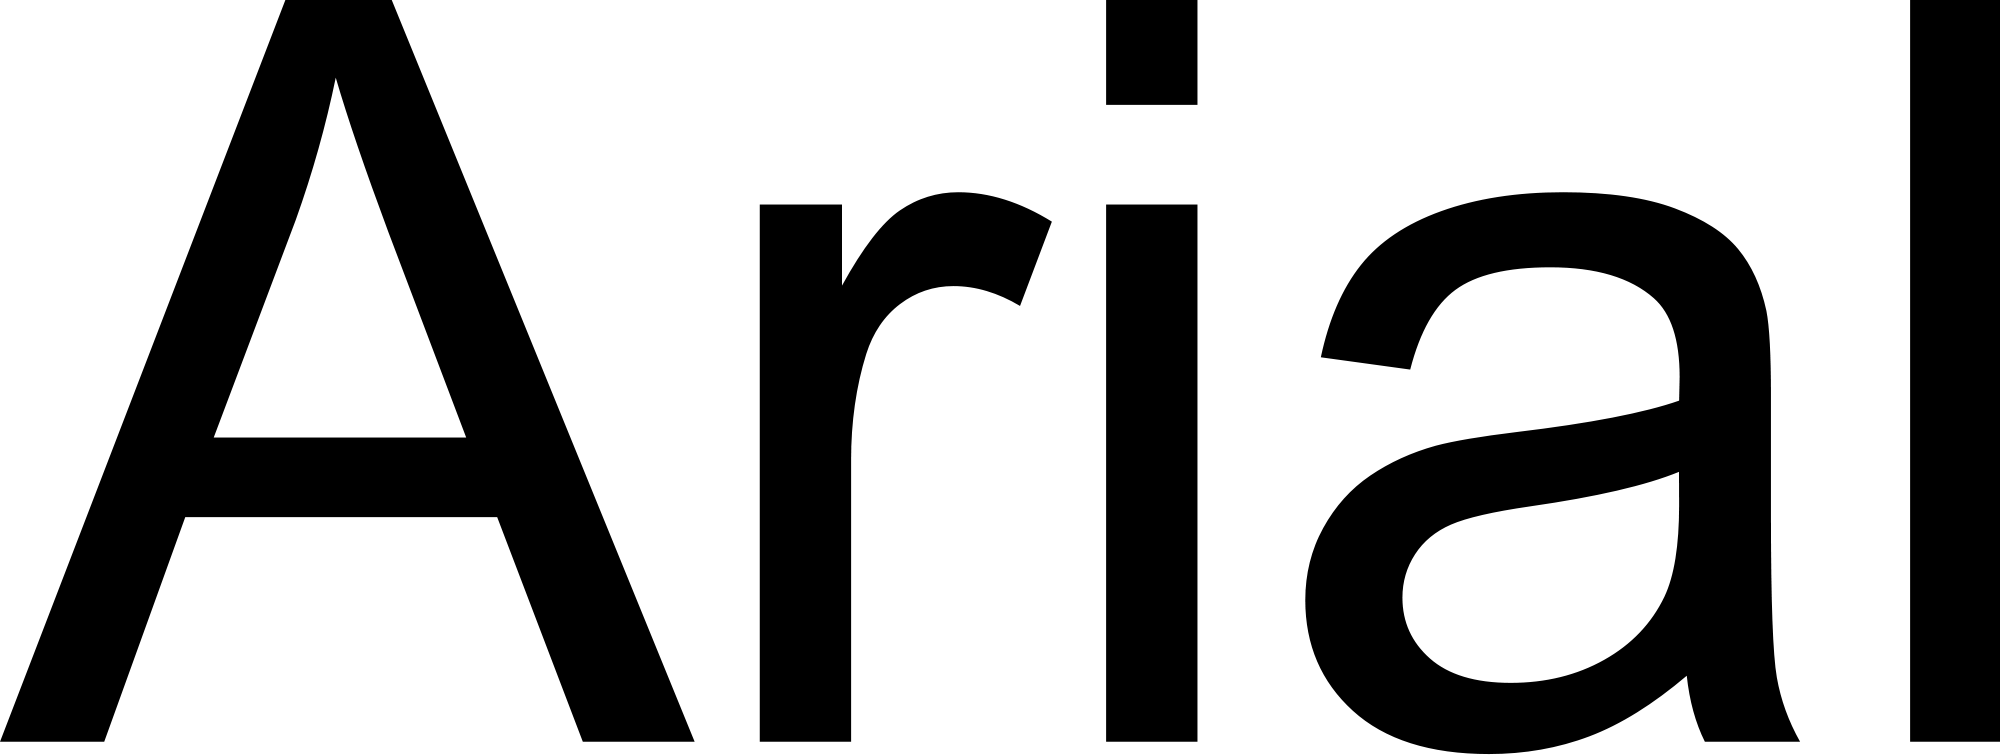 Rafika Arial - Arial Vs Helvetica (2000x756)